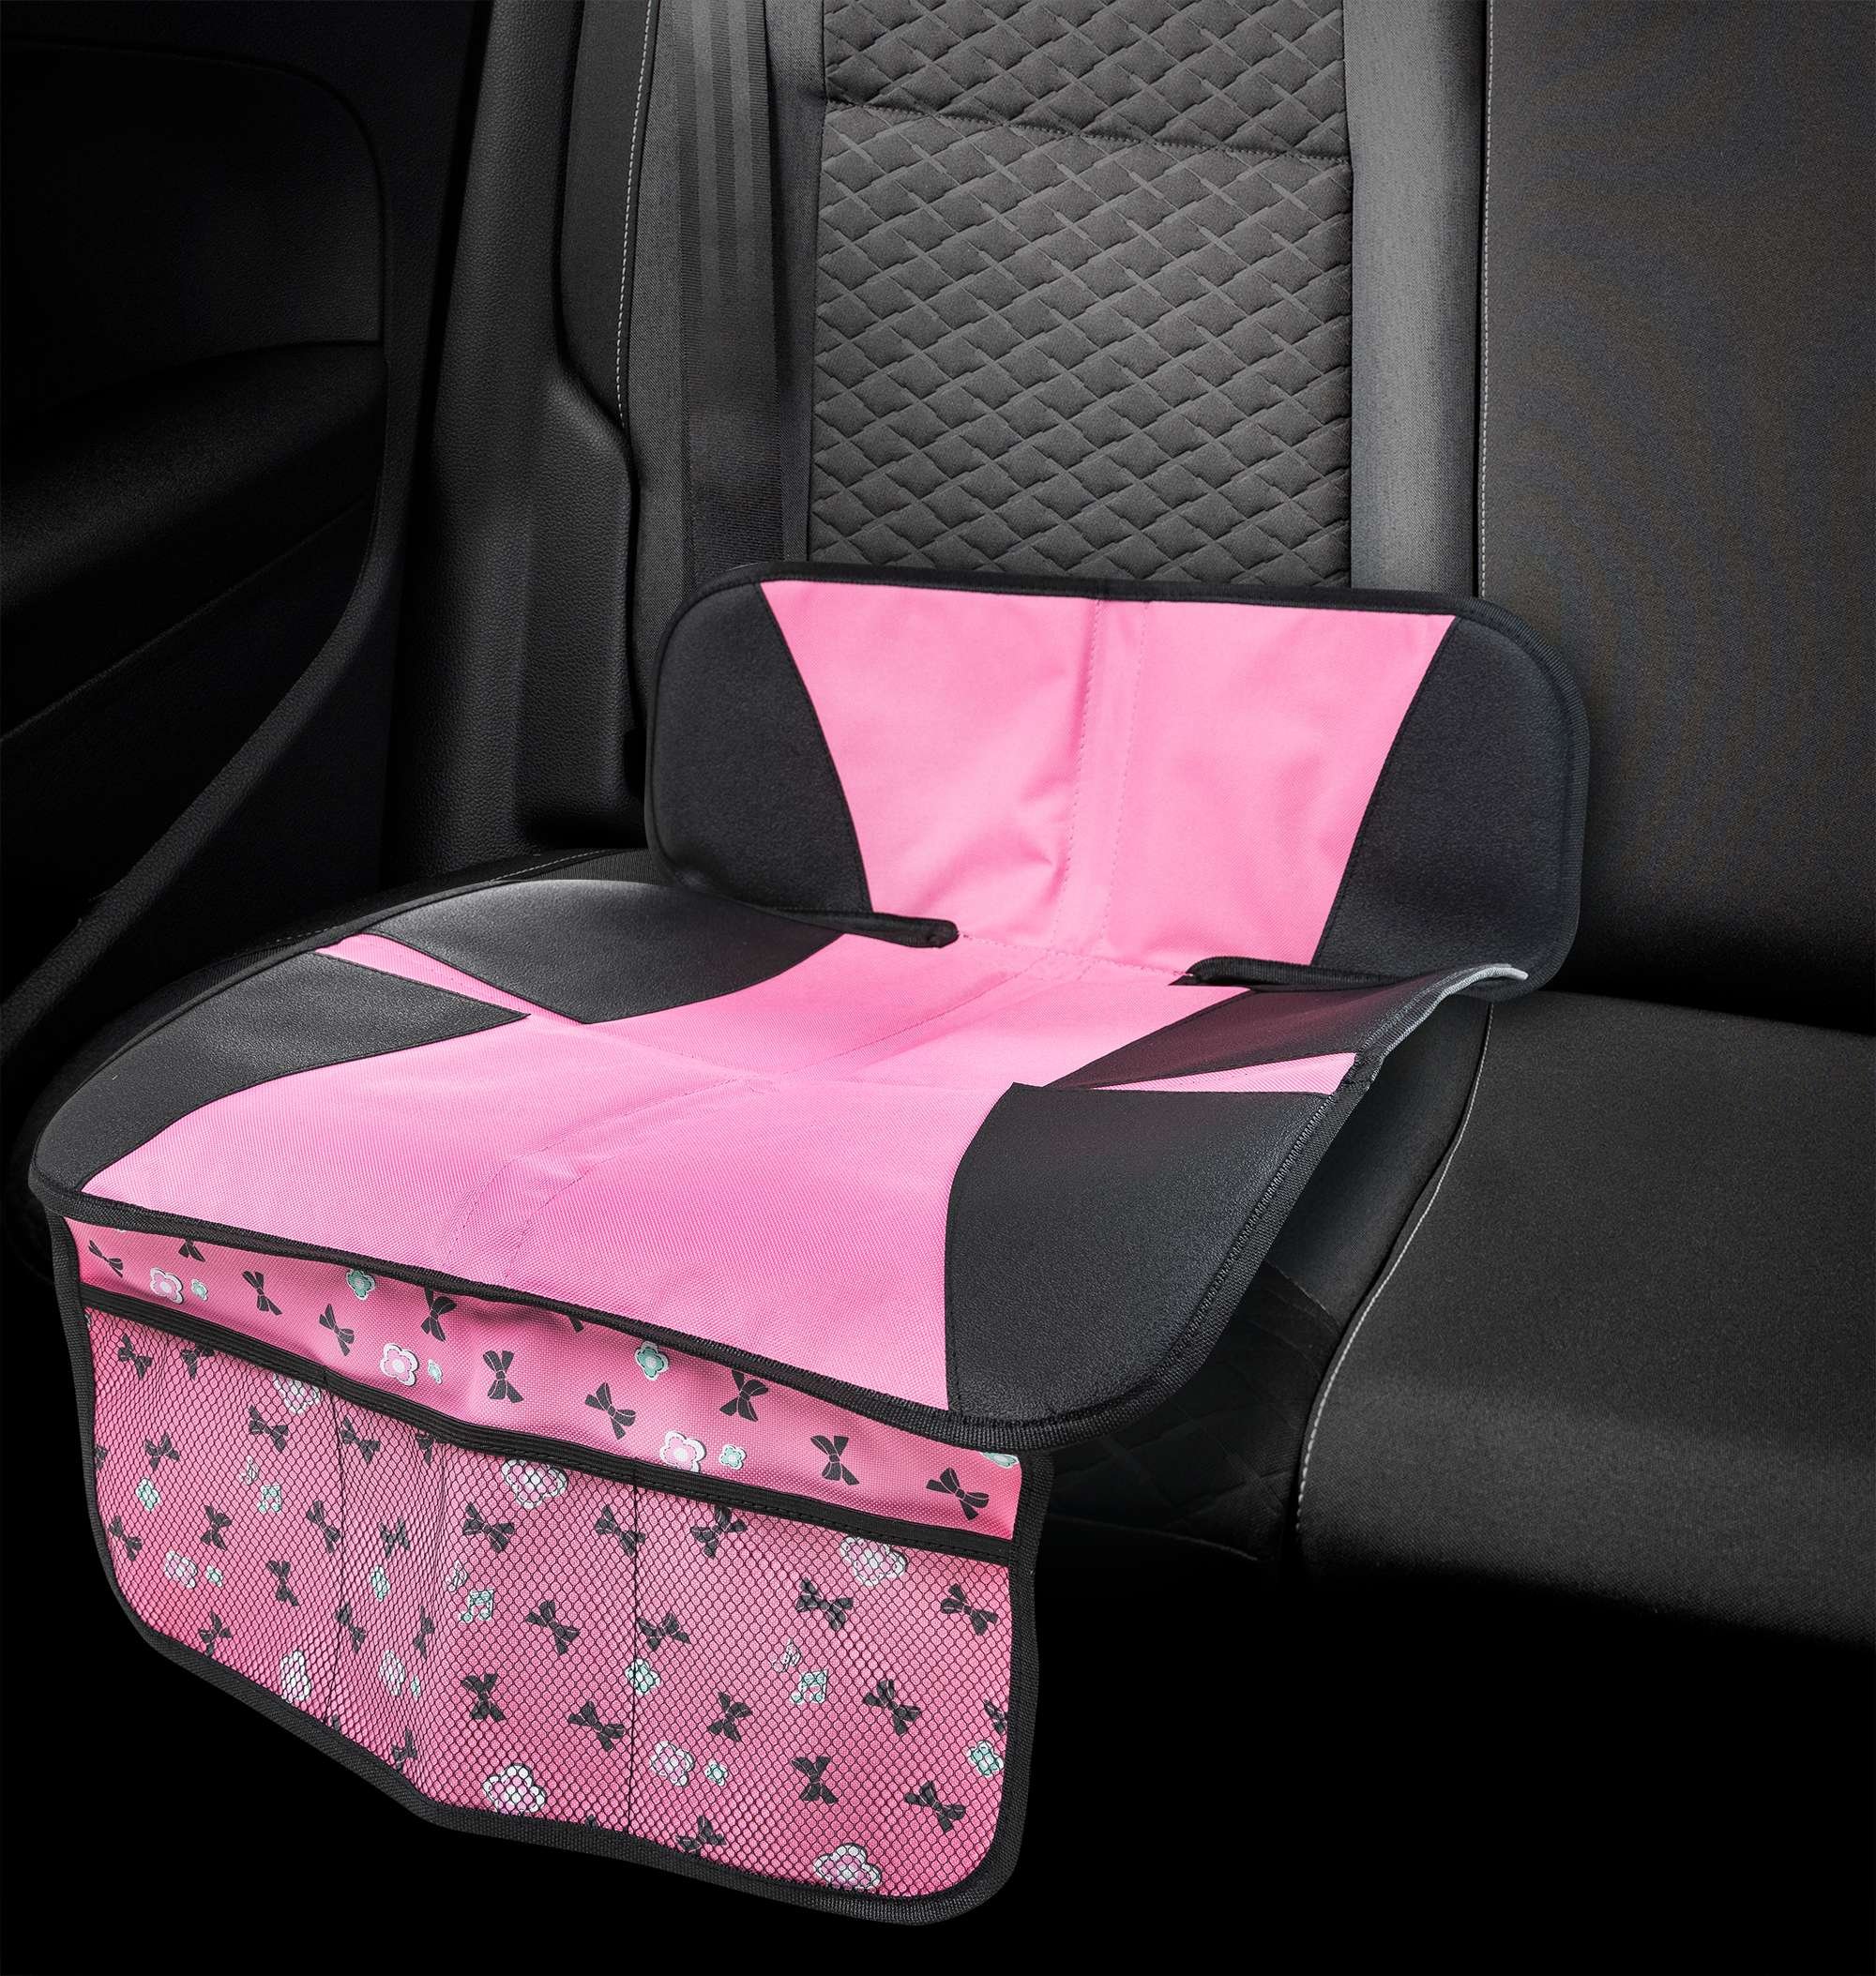 Kindersitzunterlage Ballet Doll, Auto-Schutzunterlage, Sitzschoner Kindersitz grau/rosa